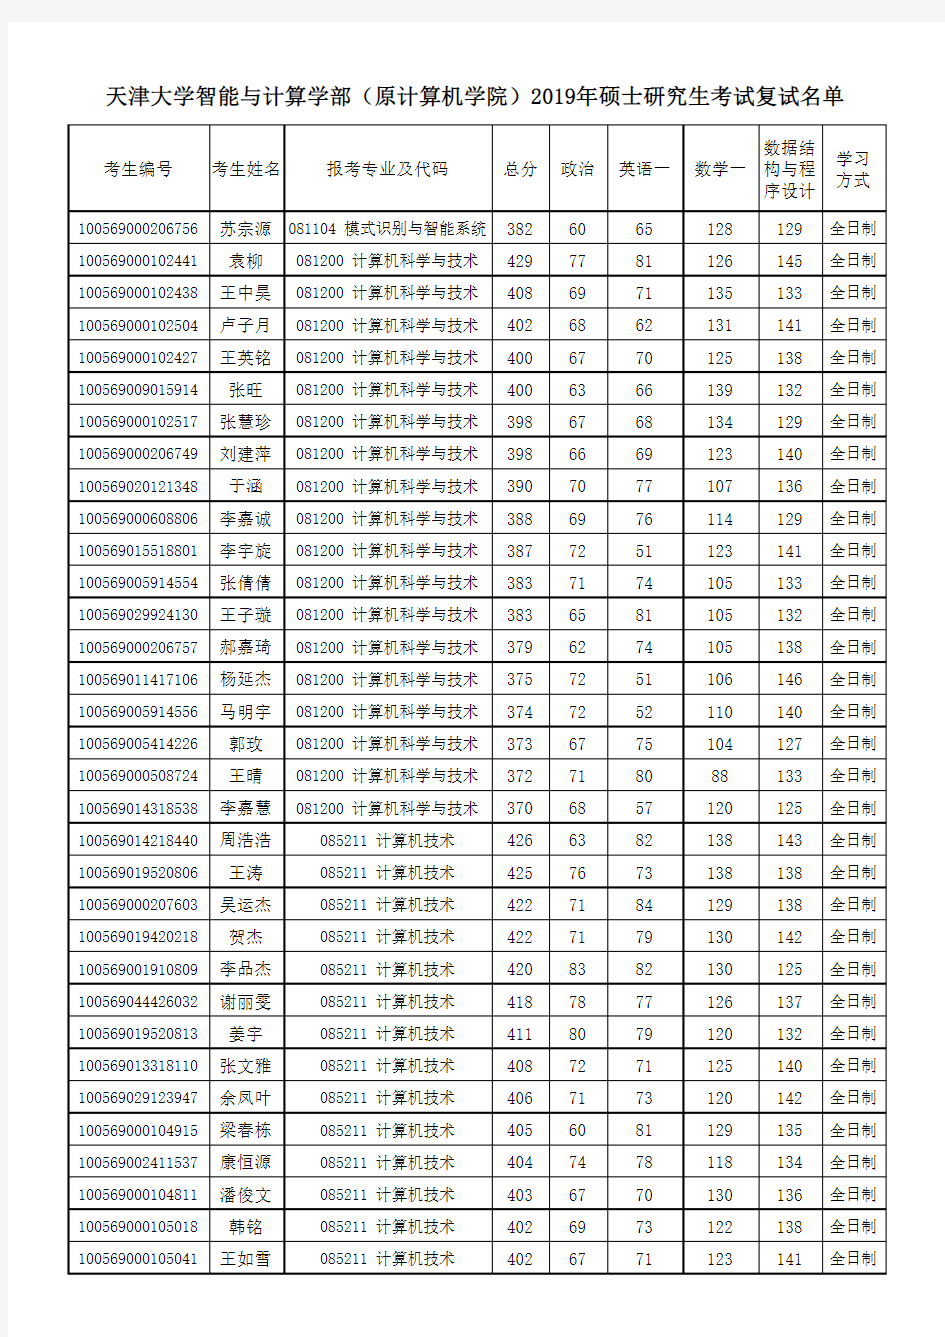 天津大学智能与计算学部(原计算机学院)2019年硕士研究生考试复试名单